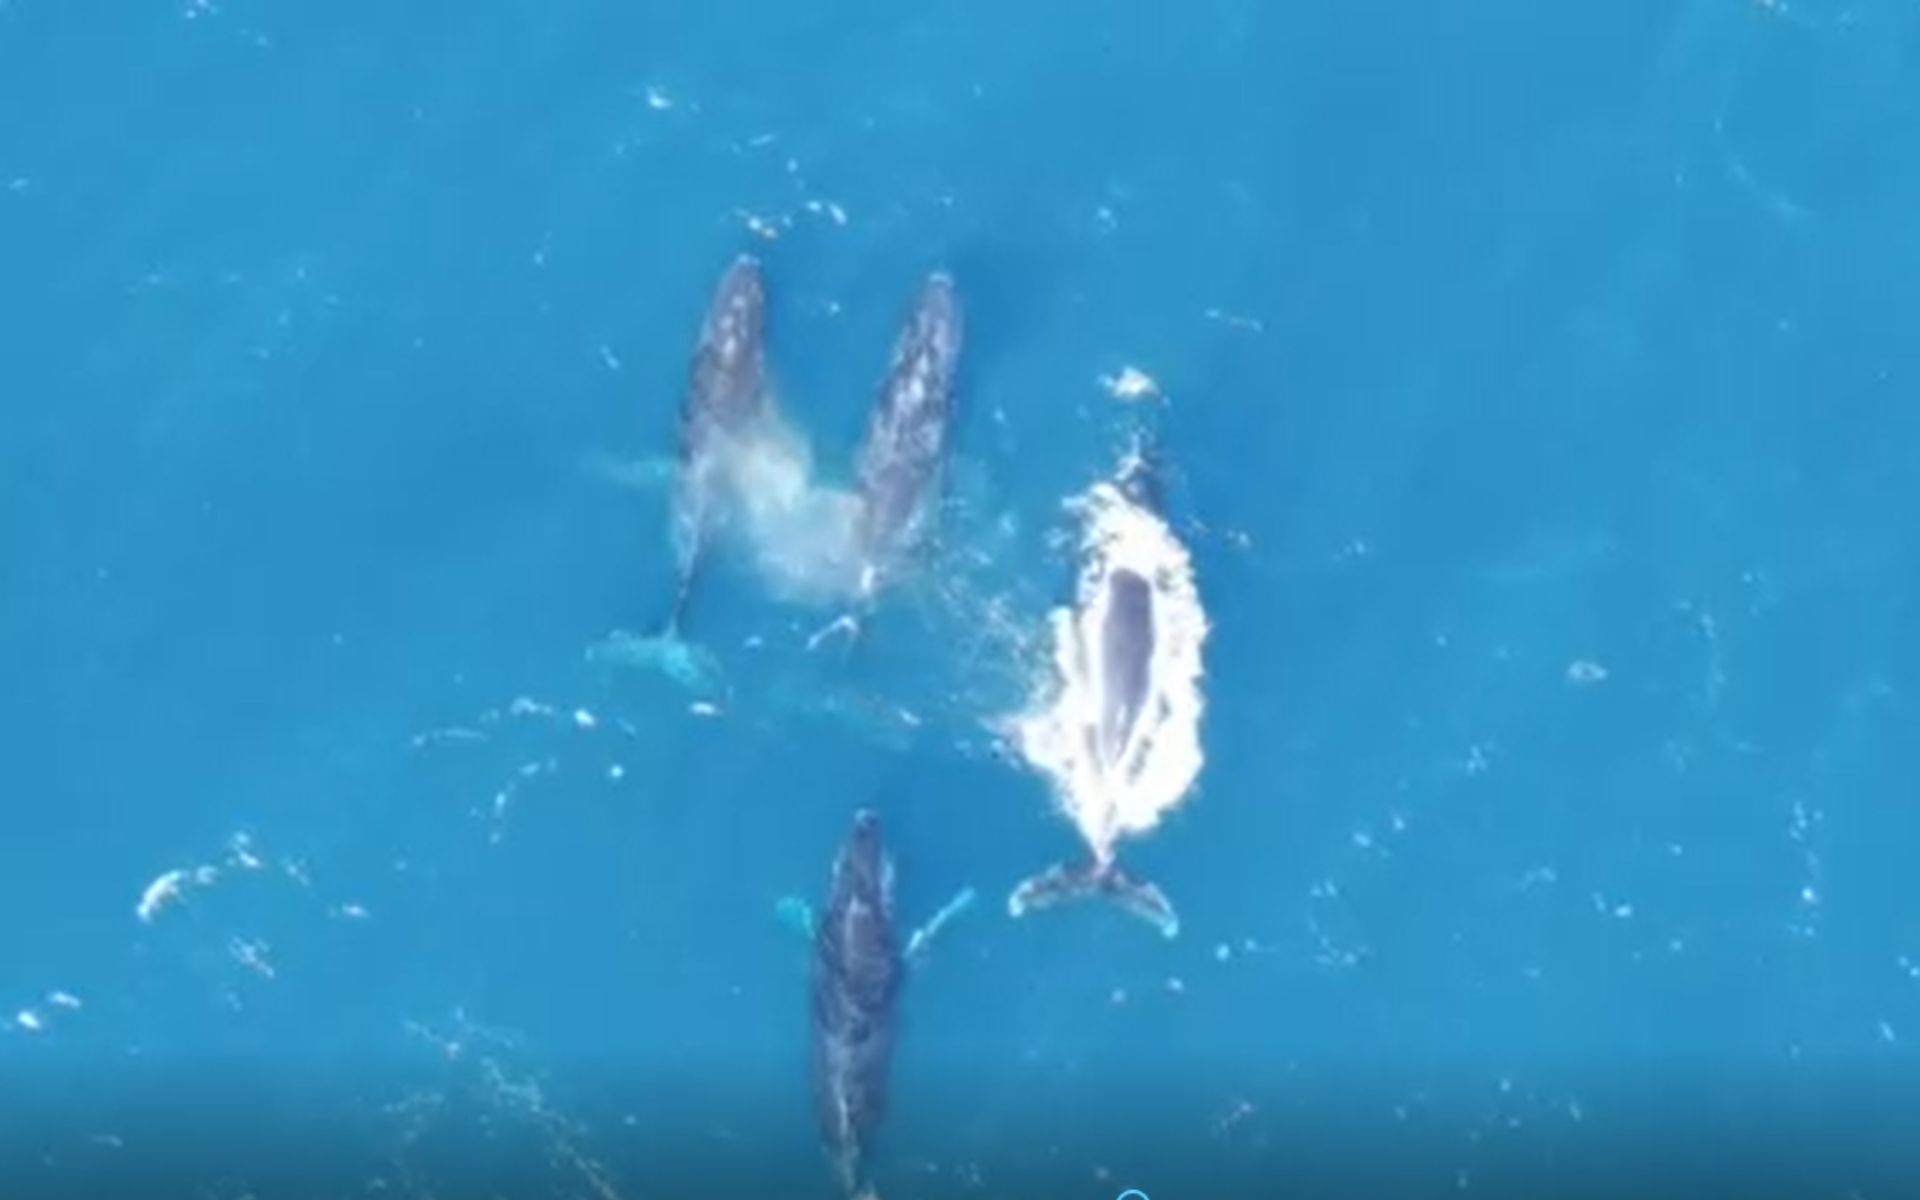 Imagem mostra quatro baleias nadando no mar de cor bem azul